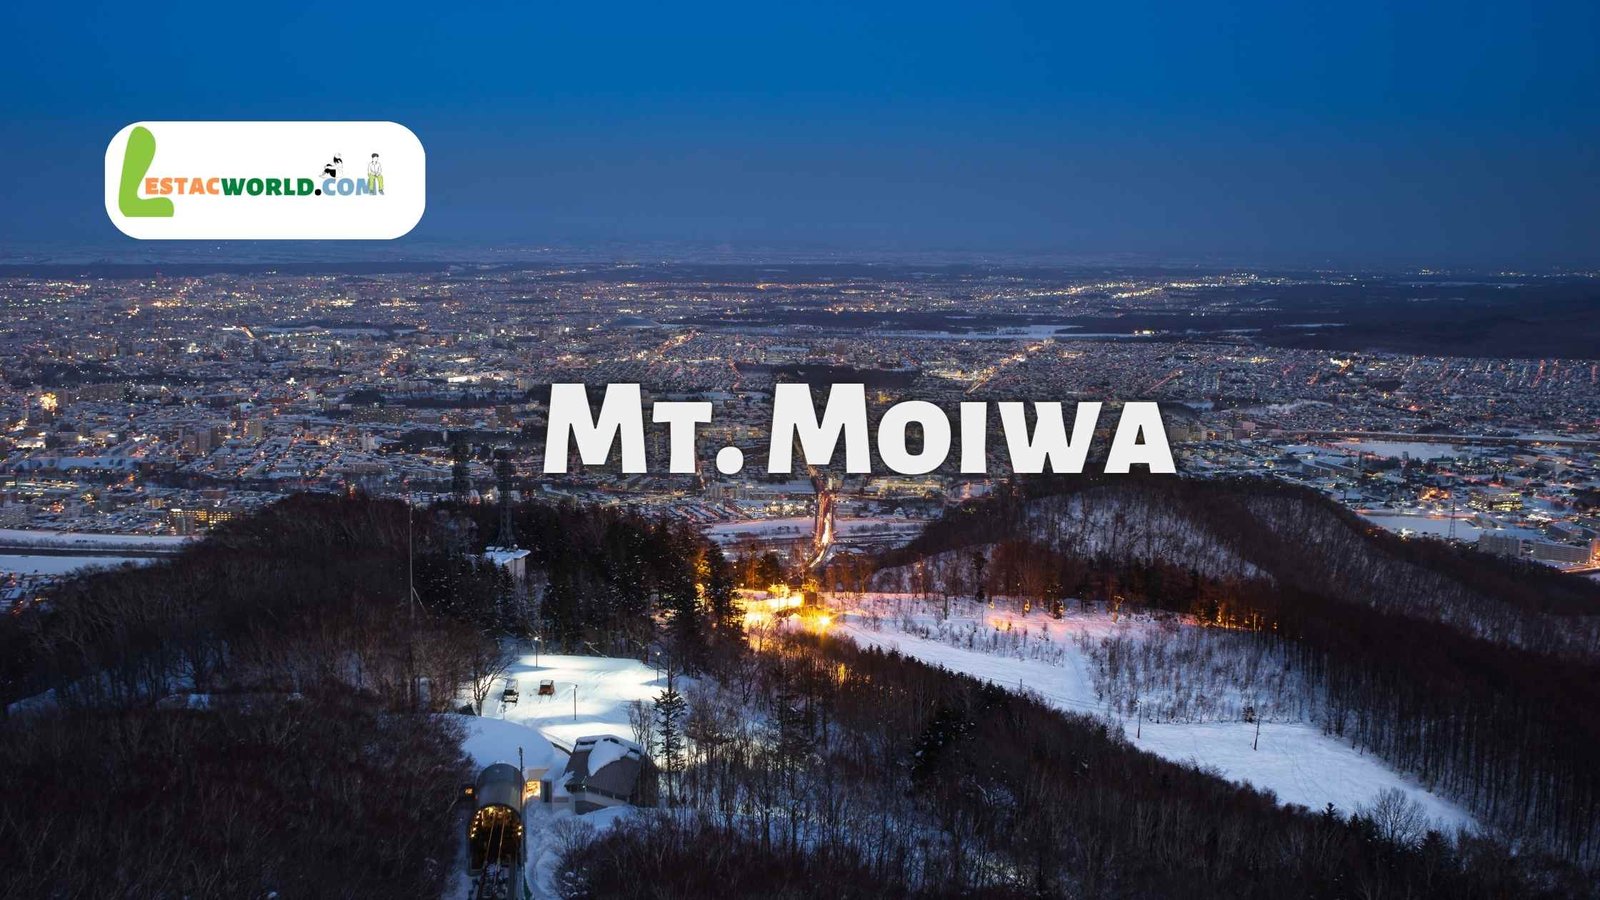 about Mt. Moiwa